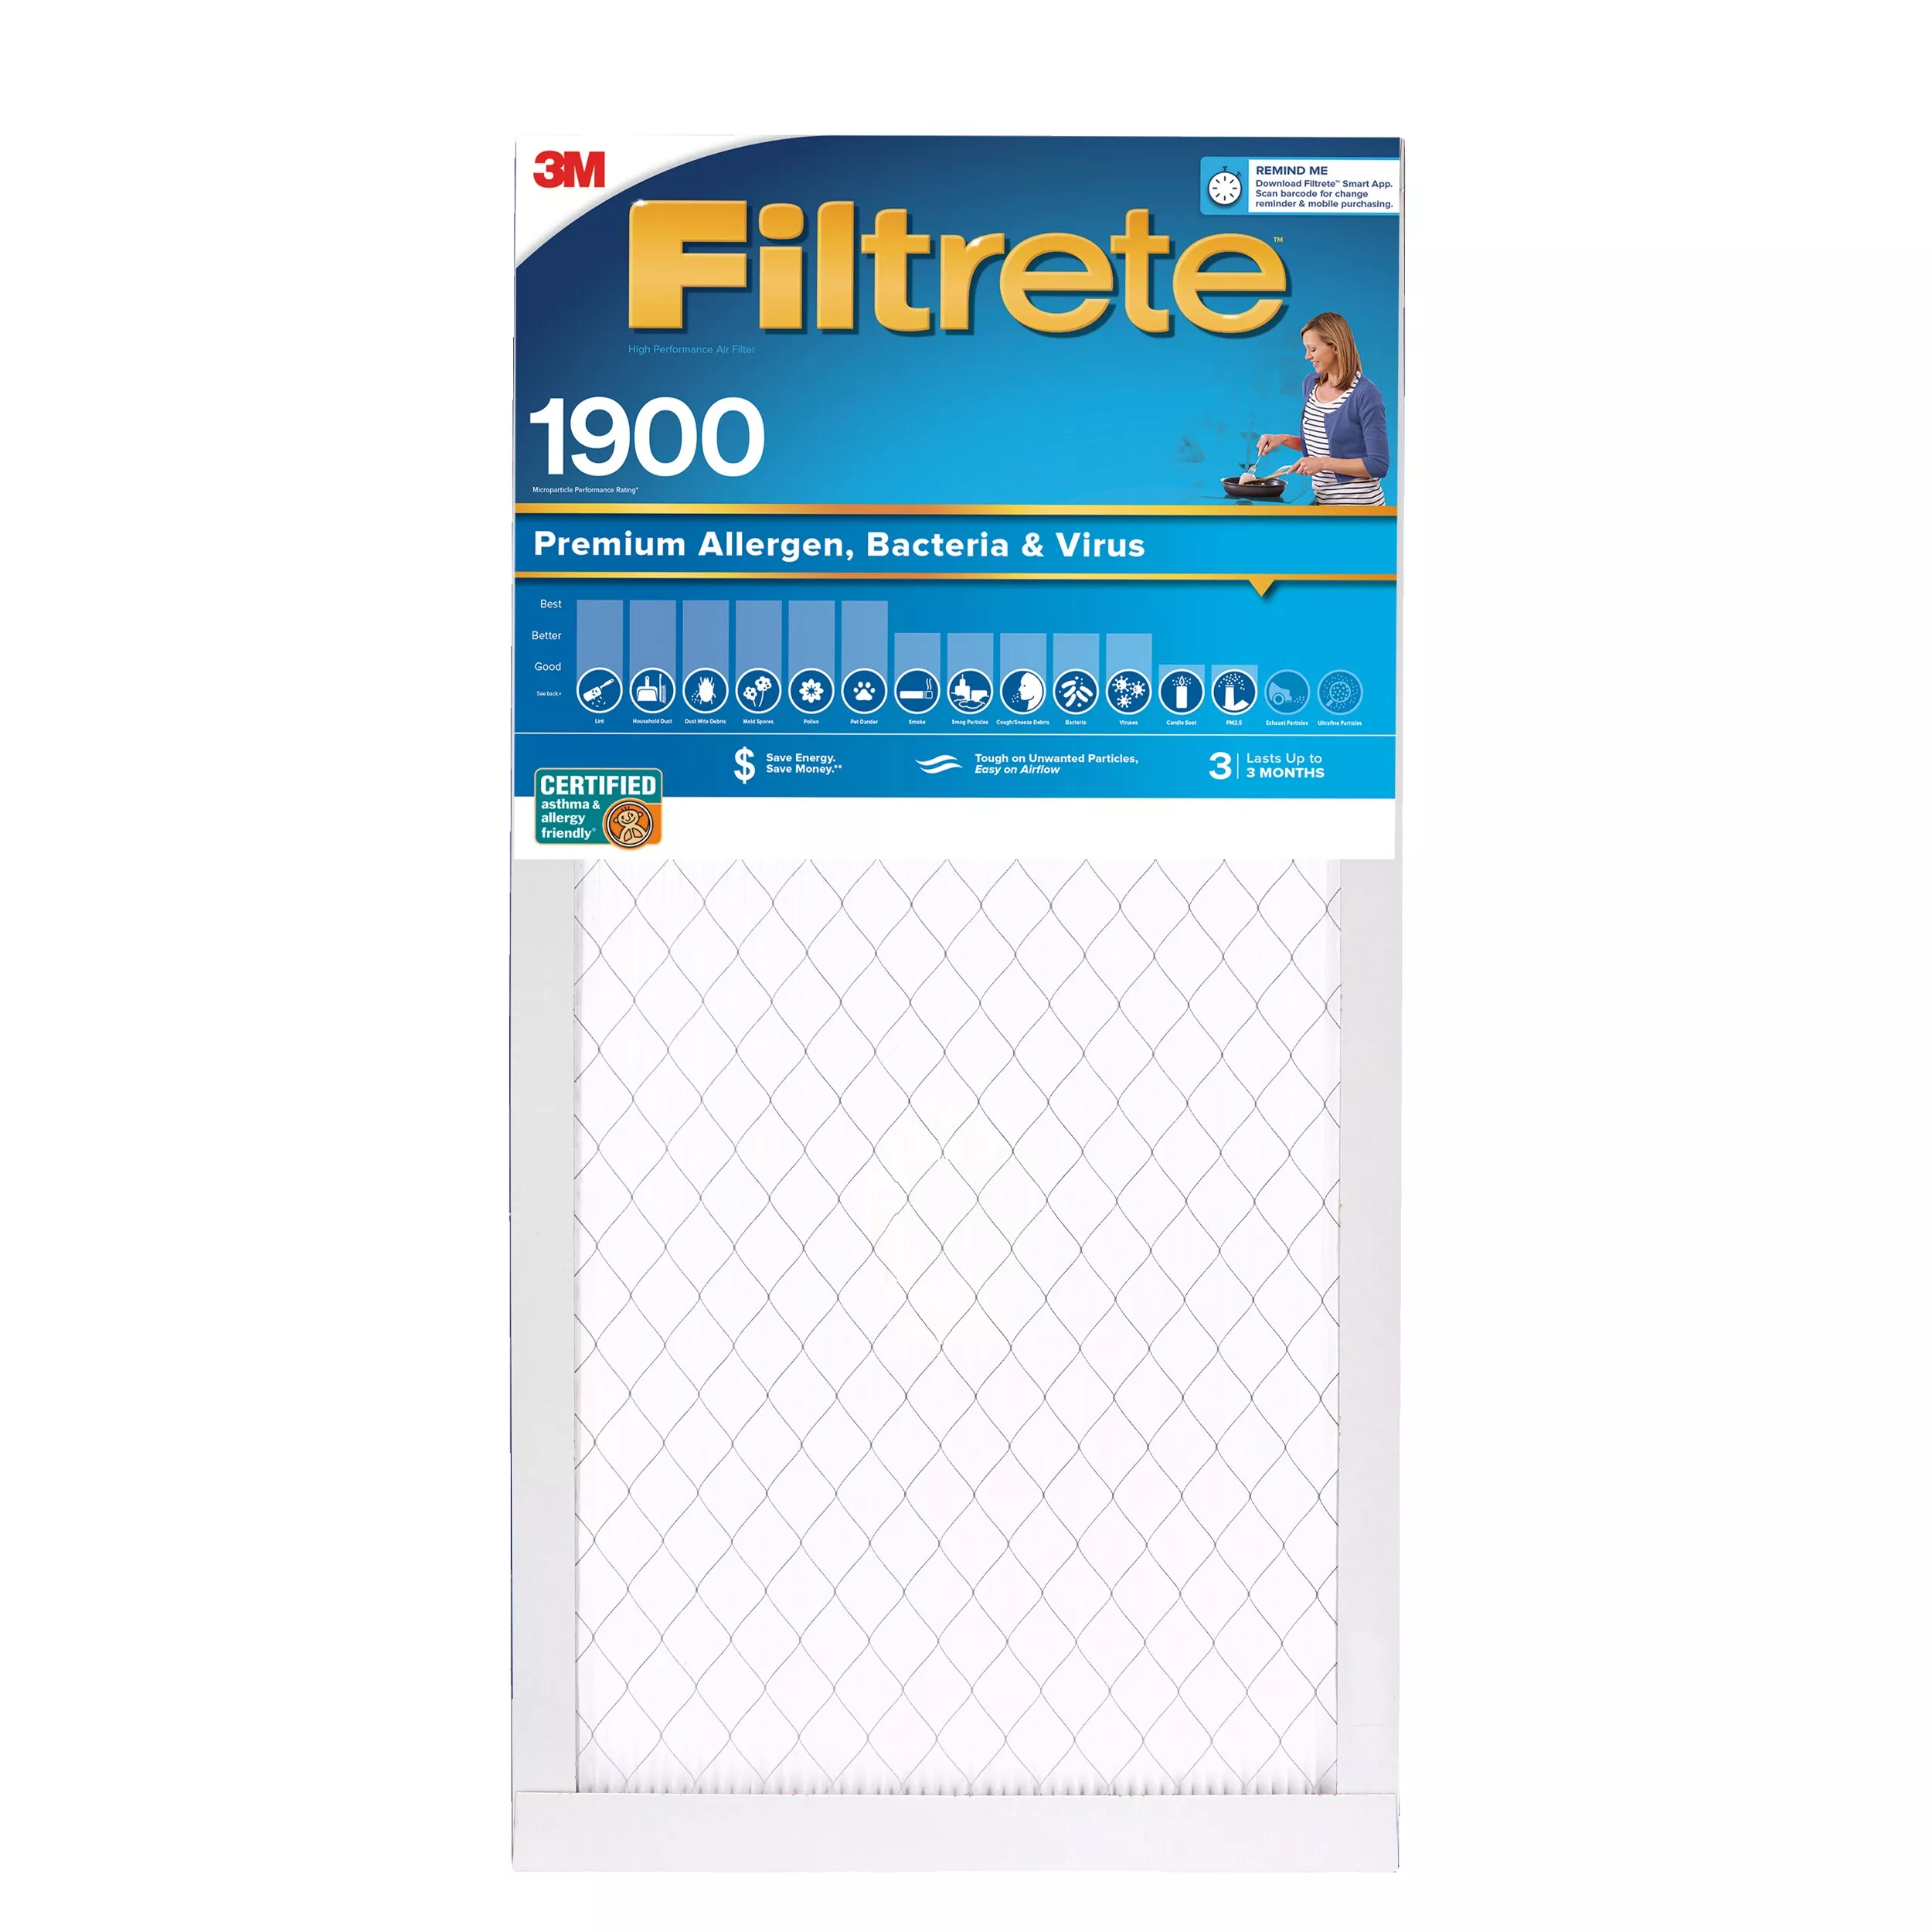 Filtrete™ High Performance Air Filter 1900 MPR UA01-4, 16 in x 25 in x 1 in (40.6 cm x 63.5 cm x 2.5 cm)